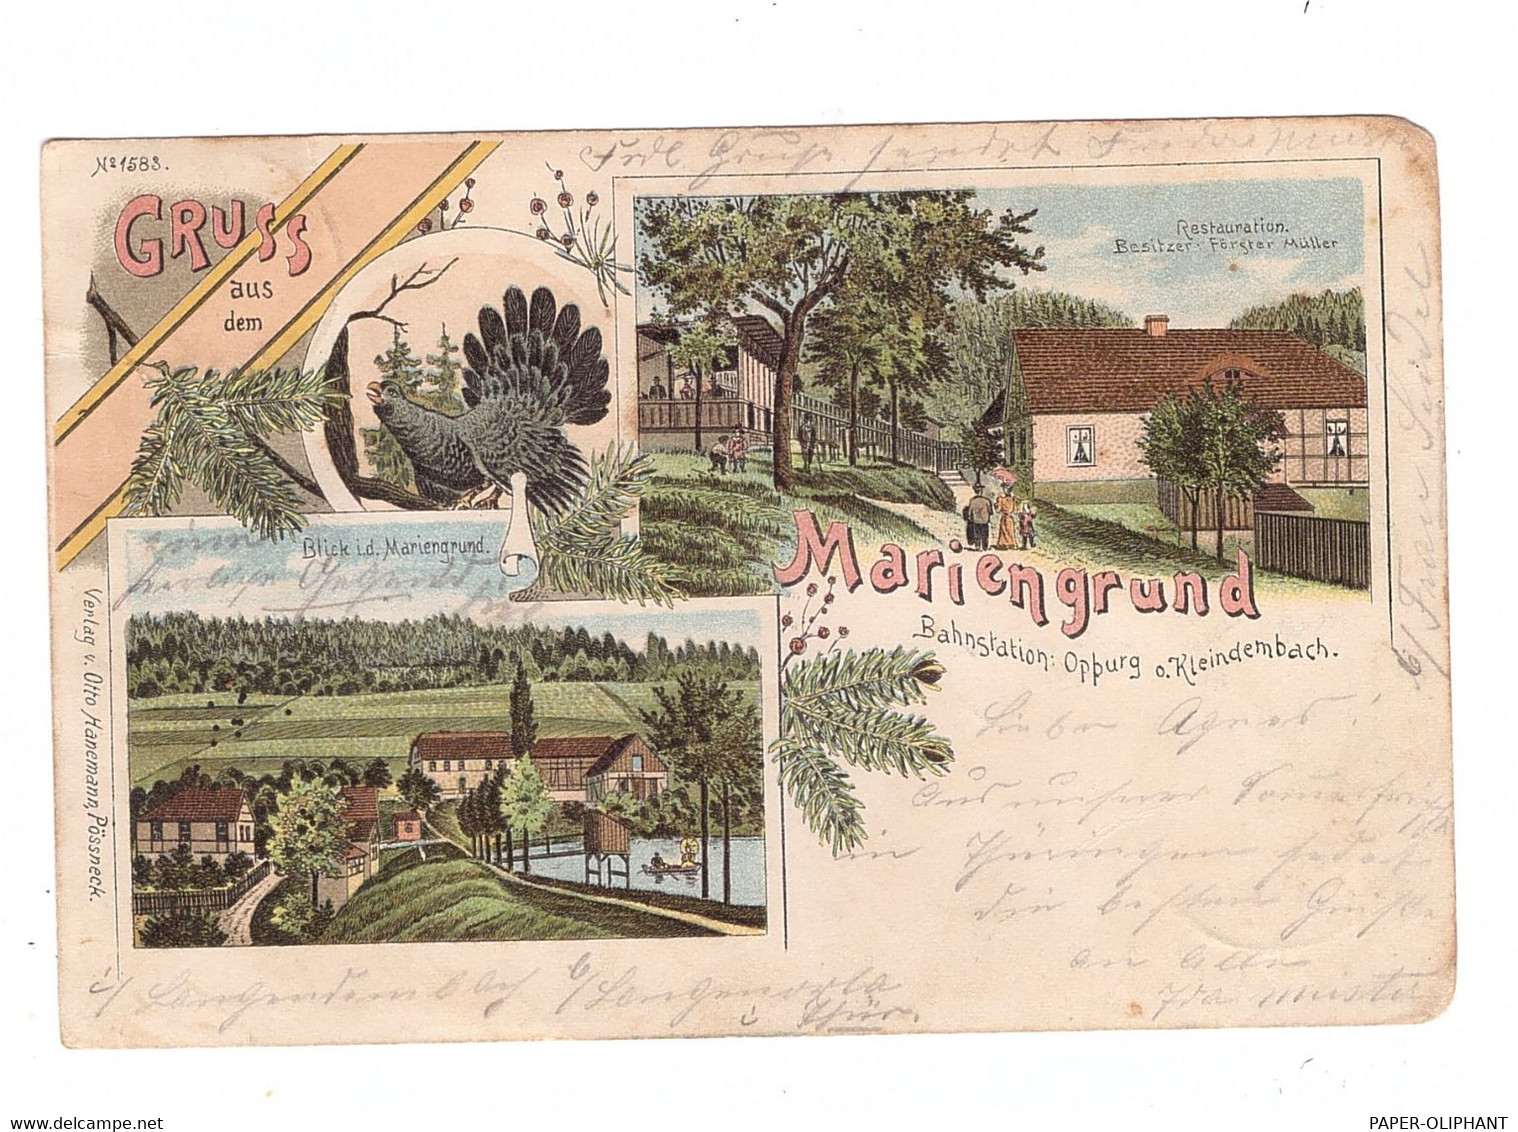 0-6841 LANGENORLA - KLEINDEMBACH, Lithographie Mariengrund, 1901 - Schleiz